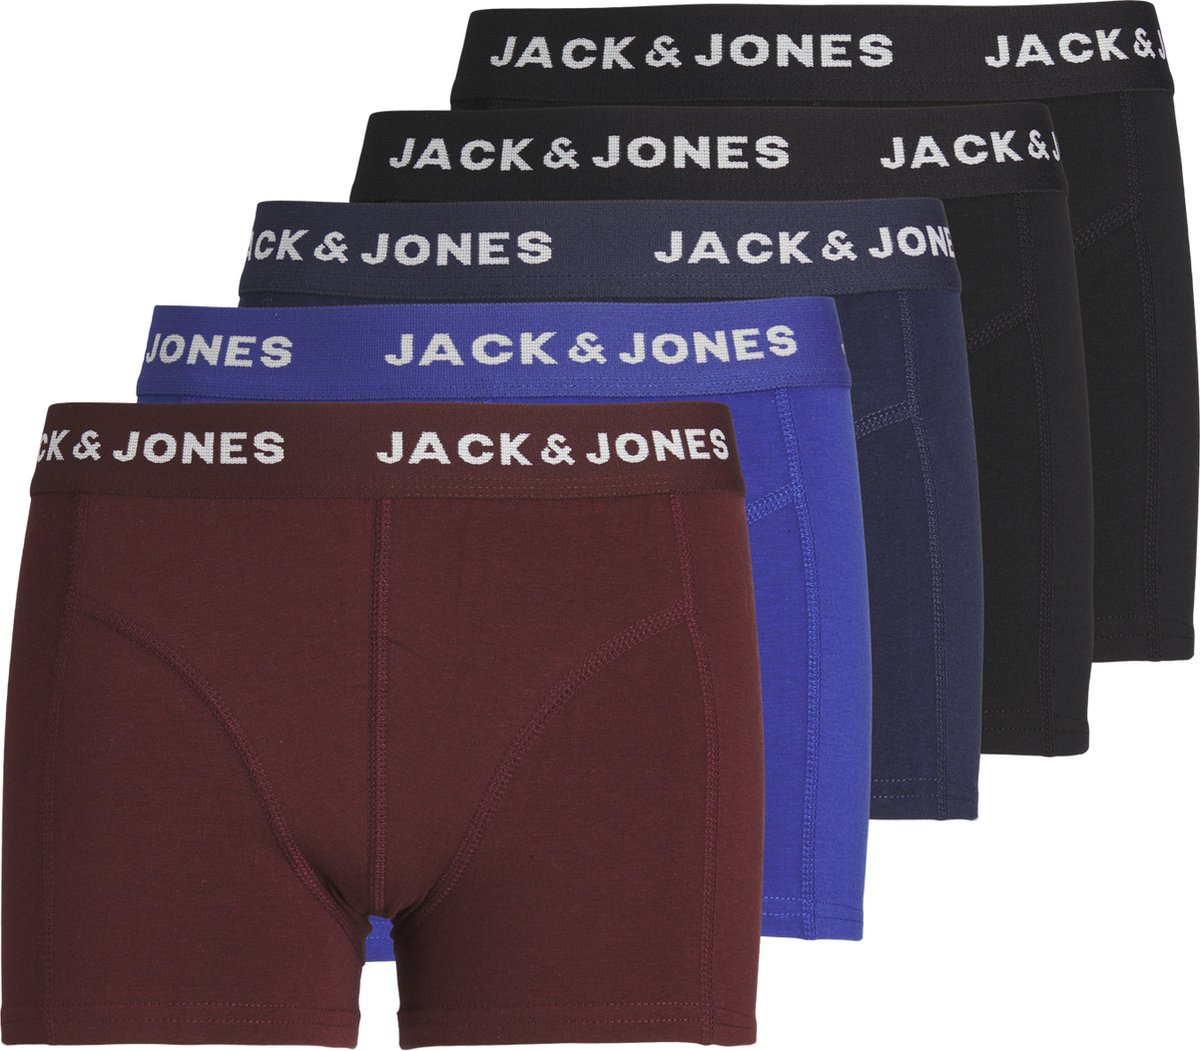 Jack & Jones Jachuey Trunks 5 Pack Noos Jnr - Underwear 